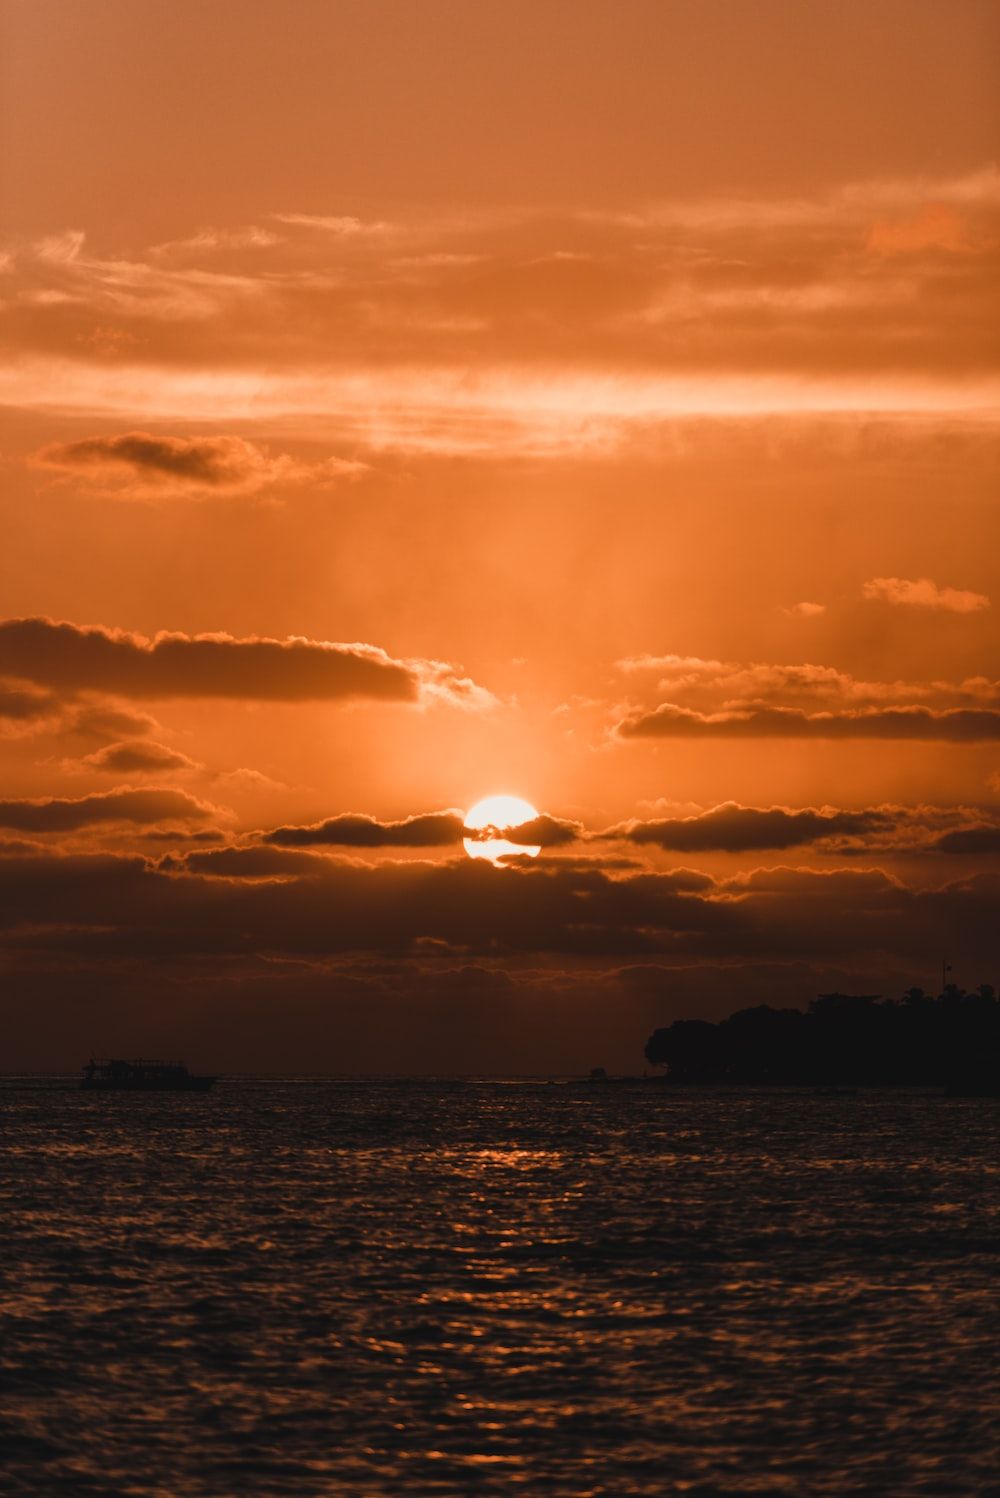 The sun setting over the sea - Sun